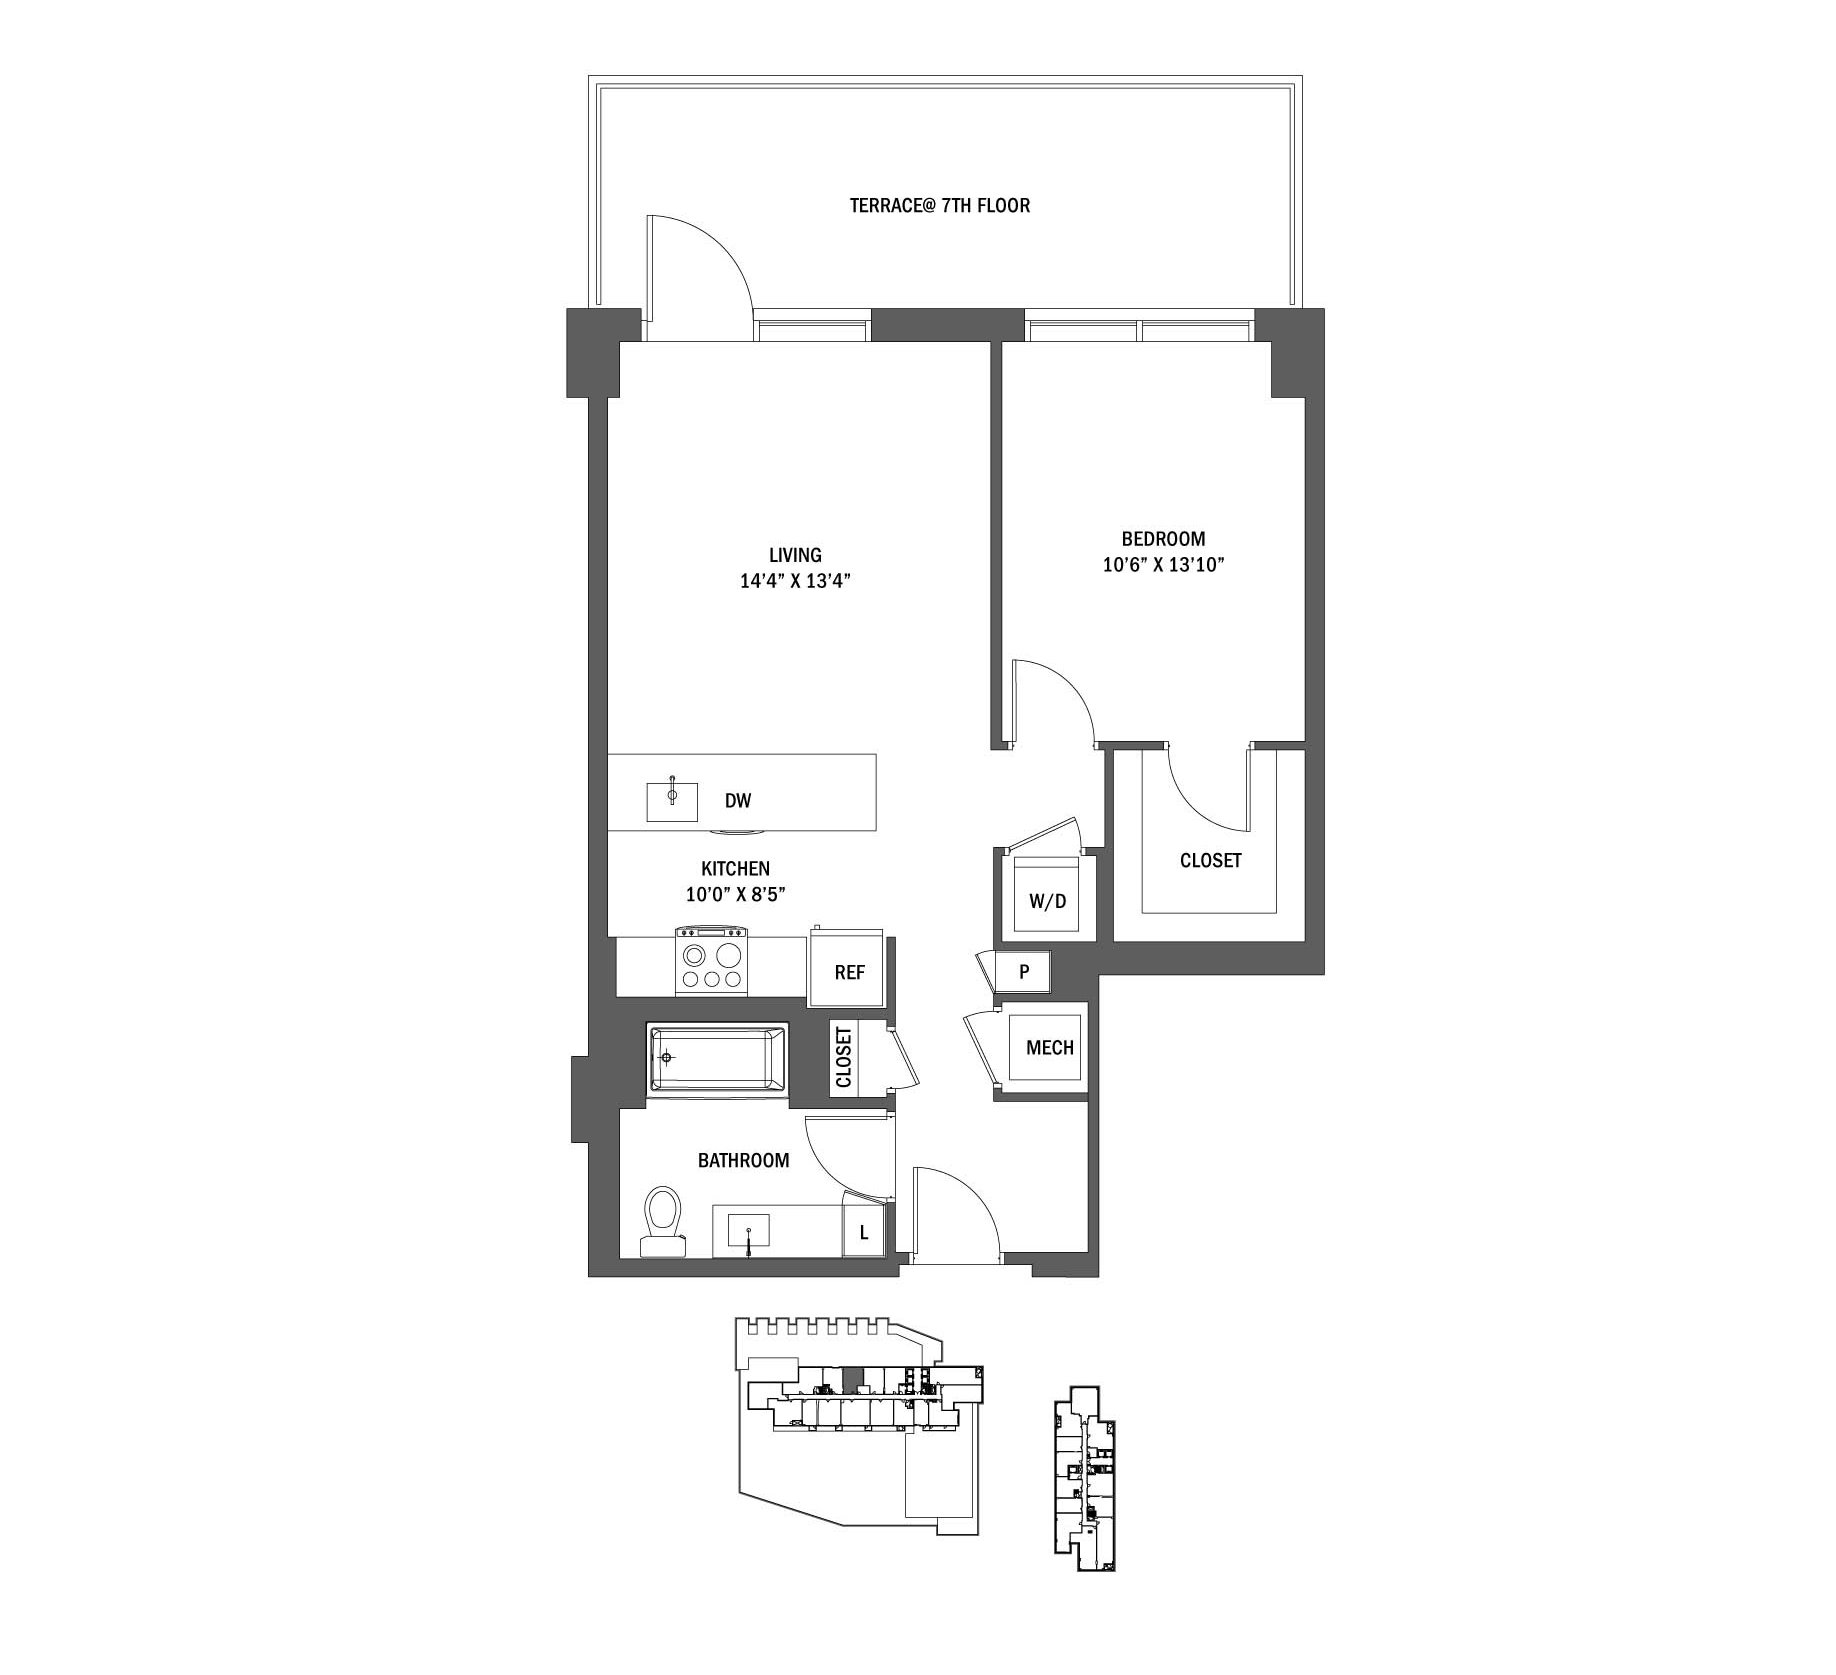 Studio, 1, 2, 3 Bedroom Apartments Reston Town Center | Signature